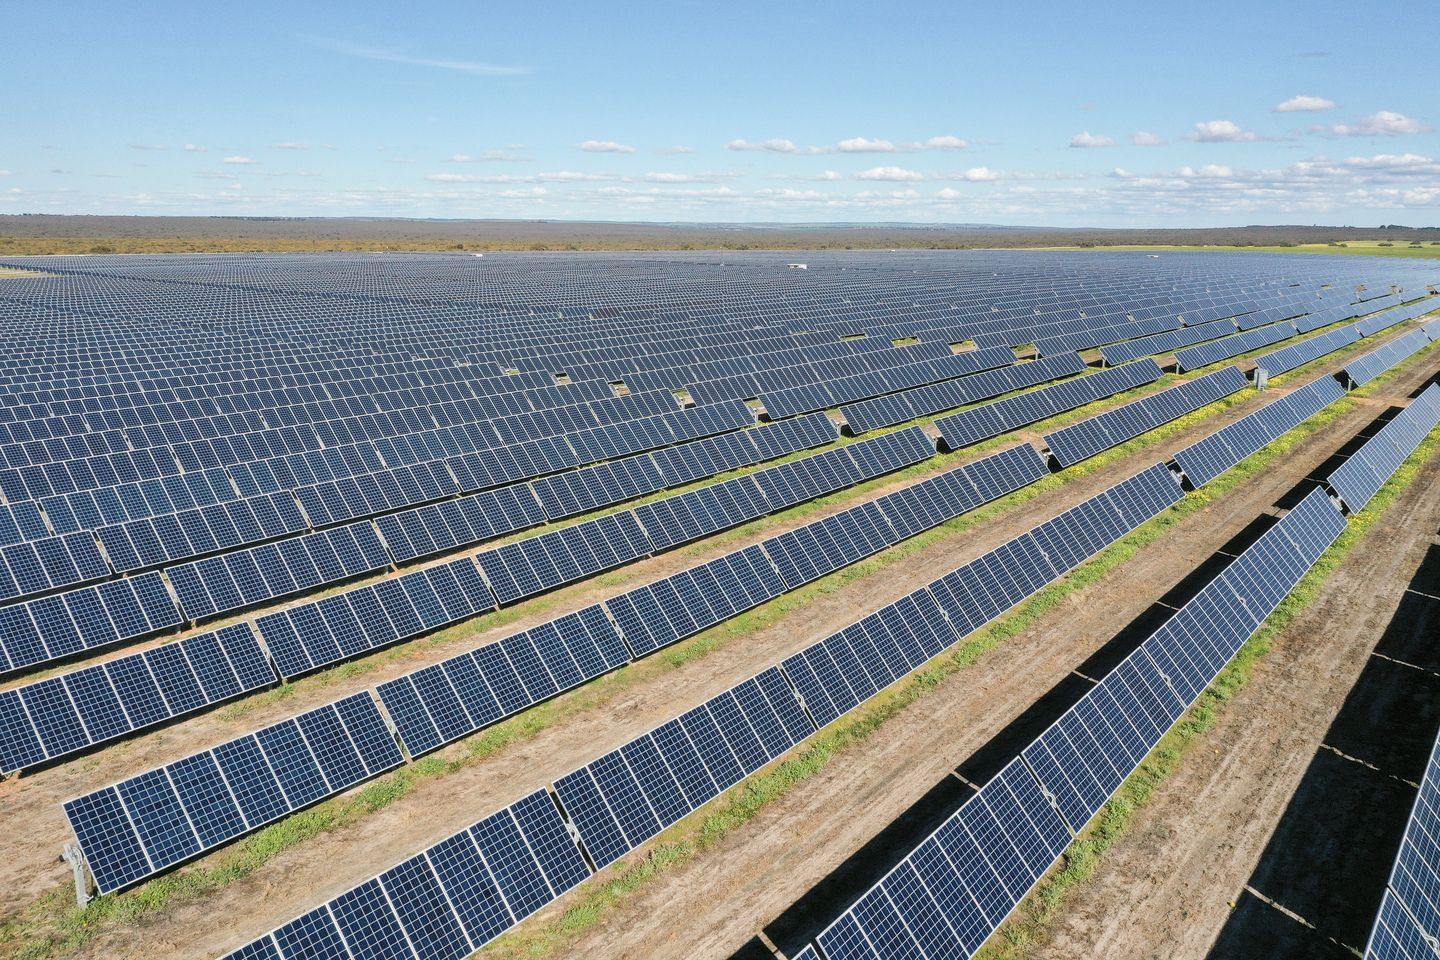 Alinta Solar Farm Project Progresses